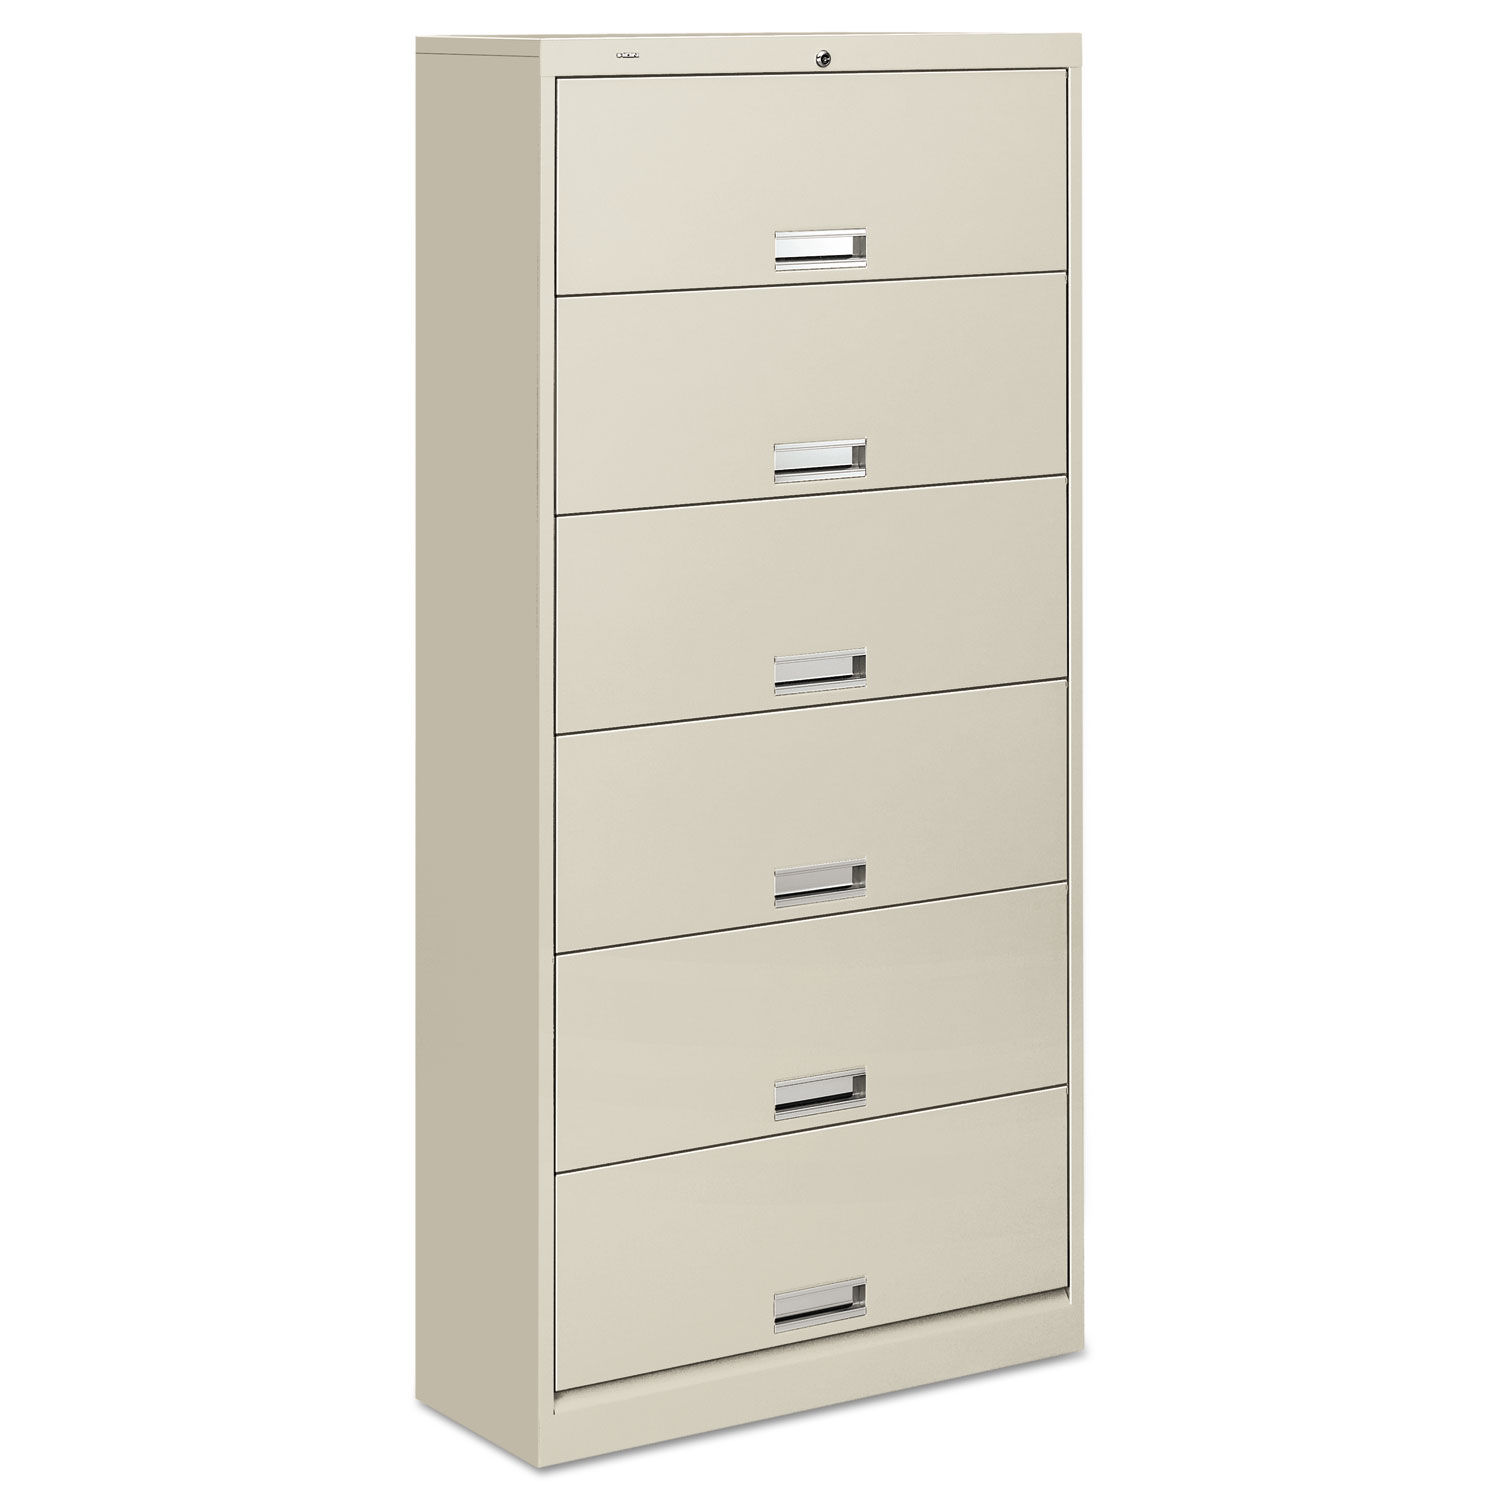 HON 600 Series Six-Shelf Steel Receding Door File, 36 x 16-3/4 x 75-7/8, Light Gray